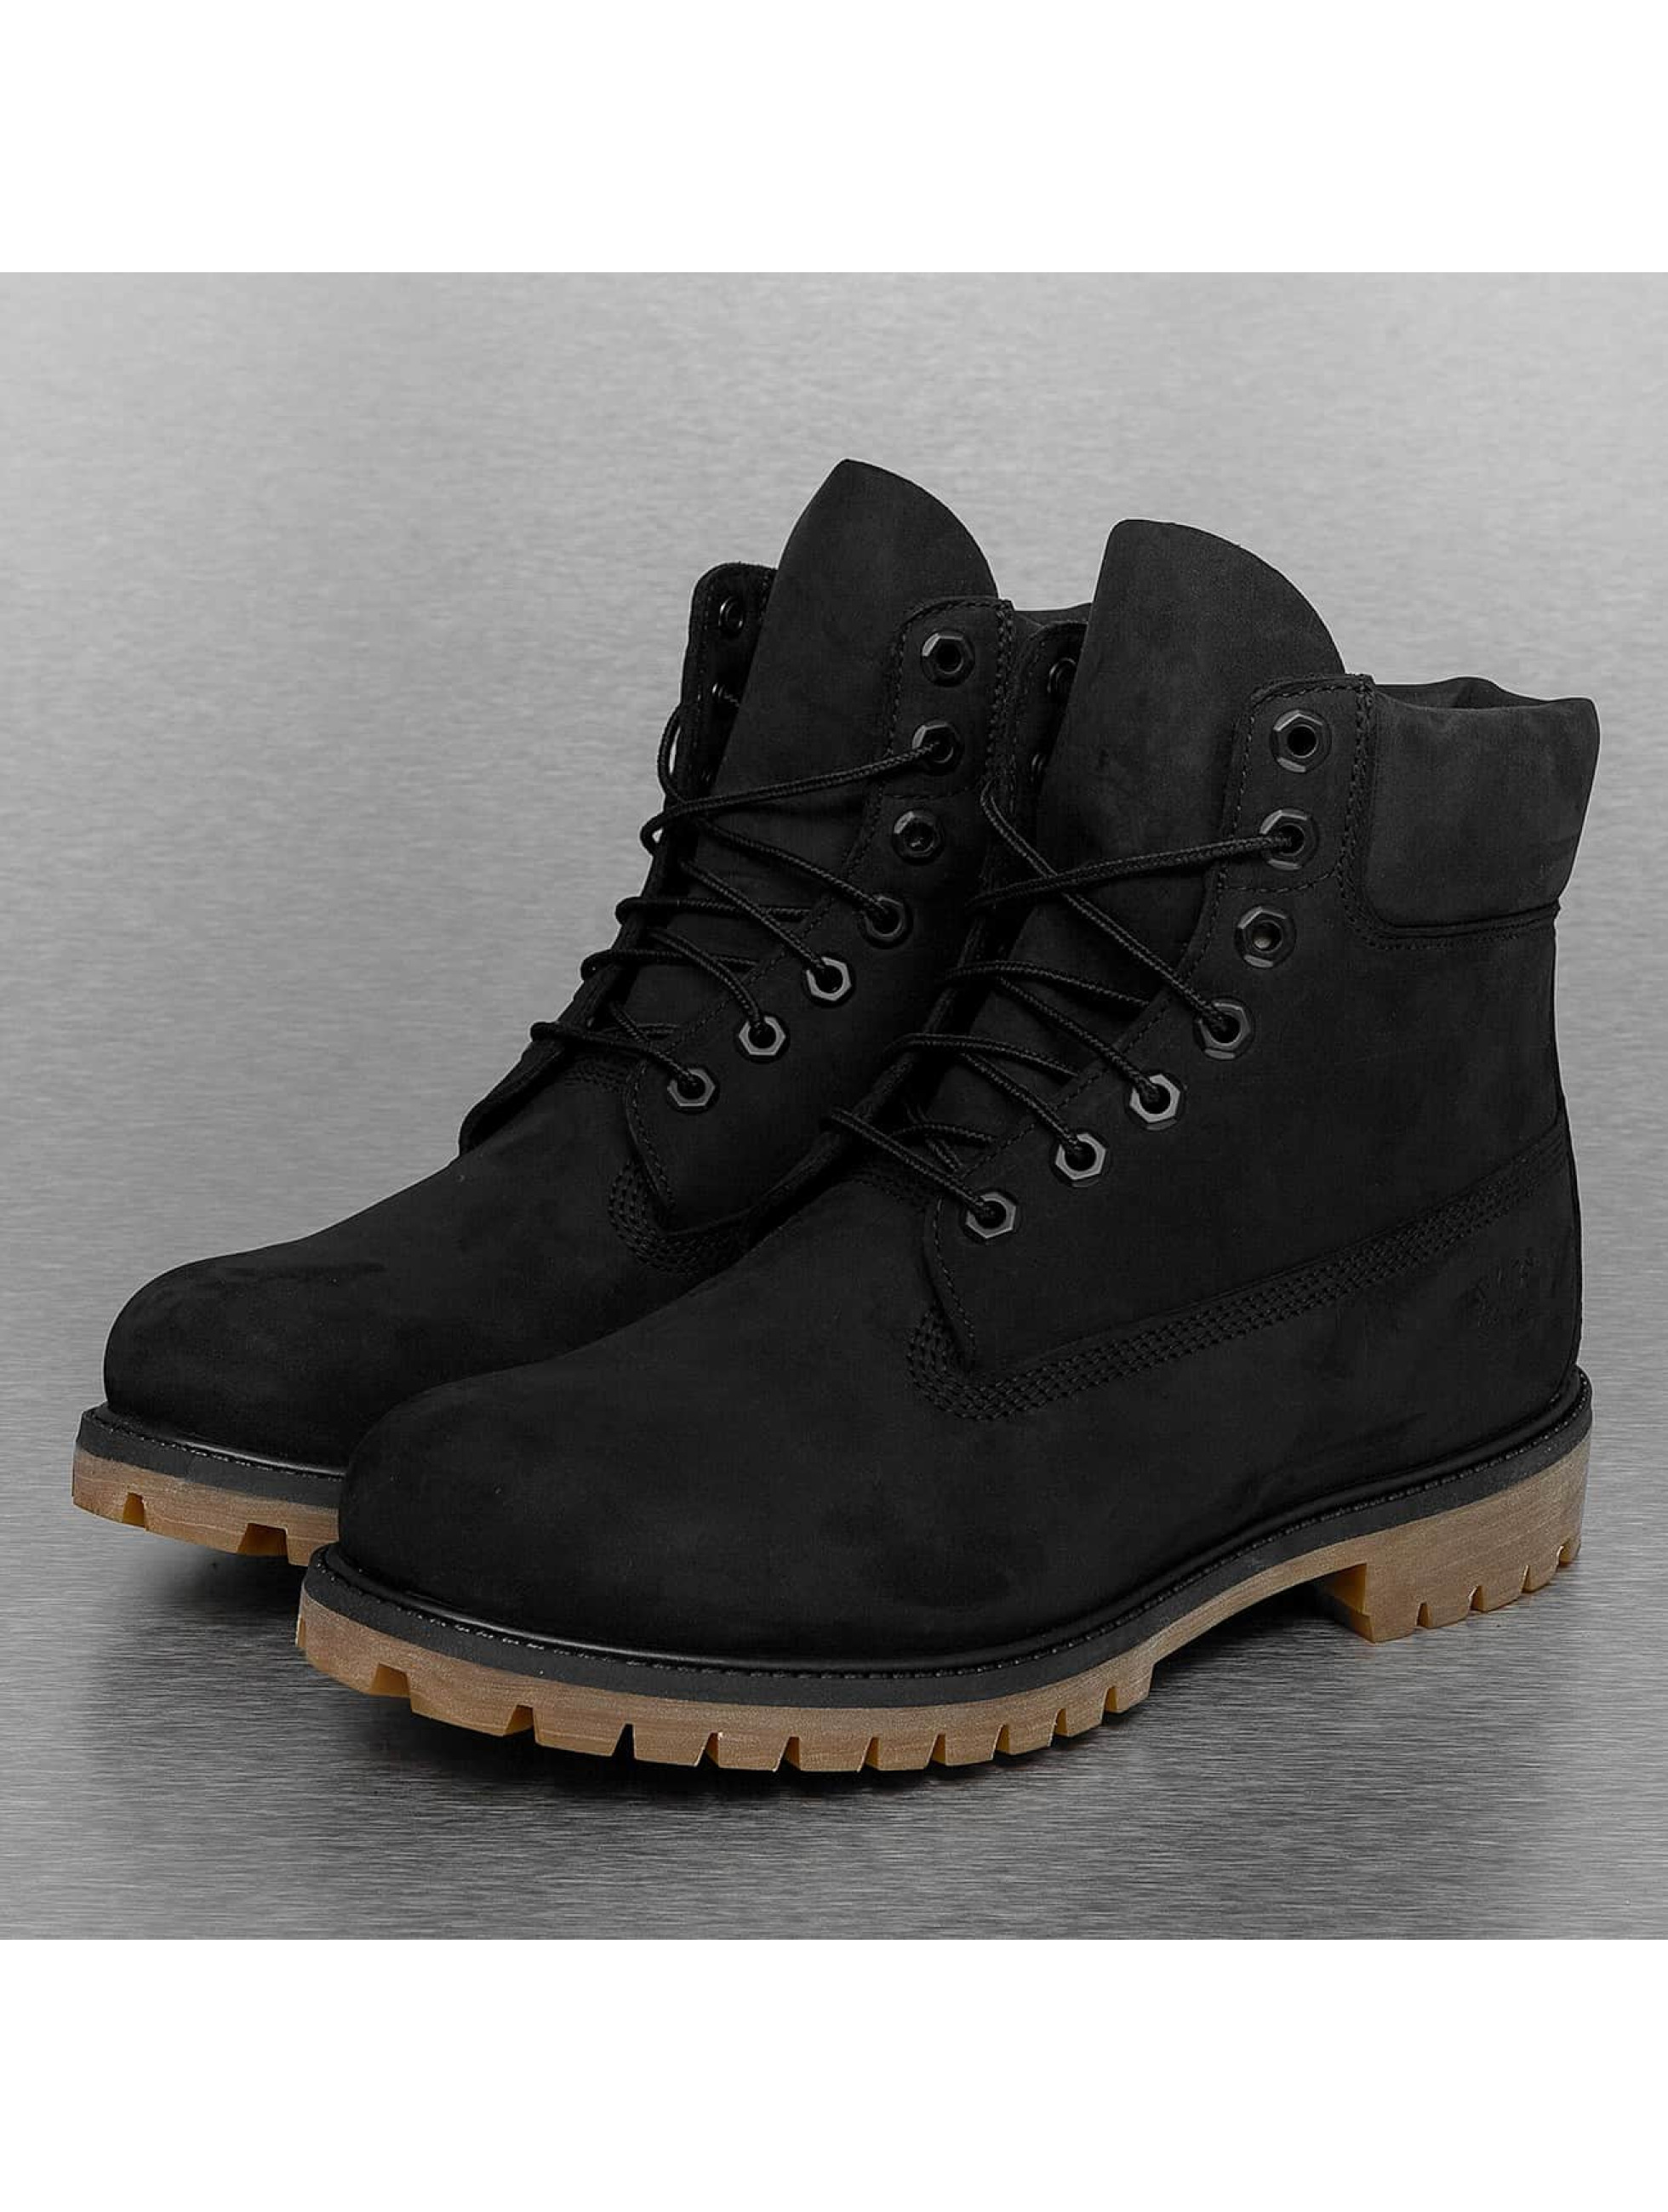 Boots Icon 6 In Premium in schwarz